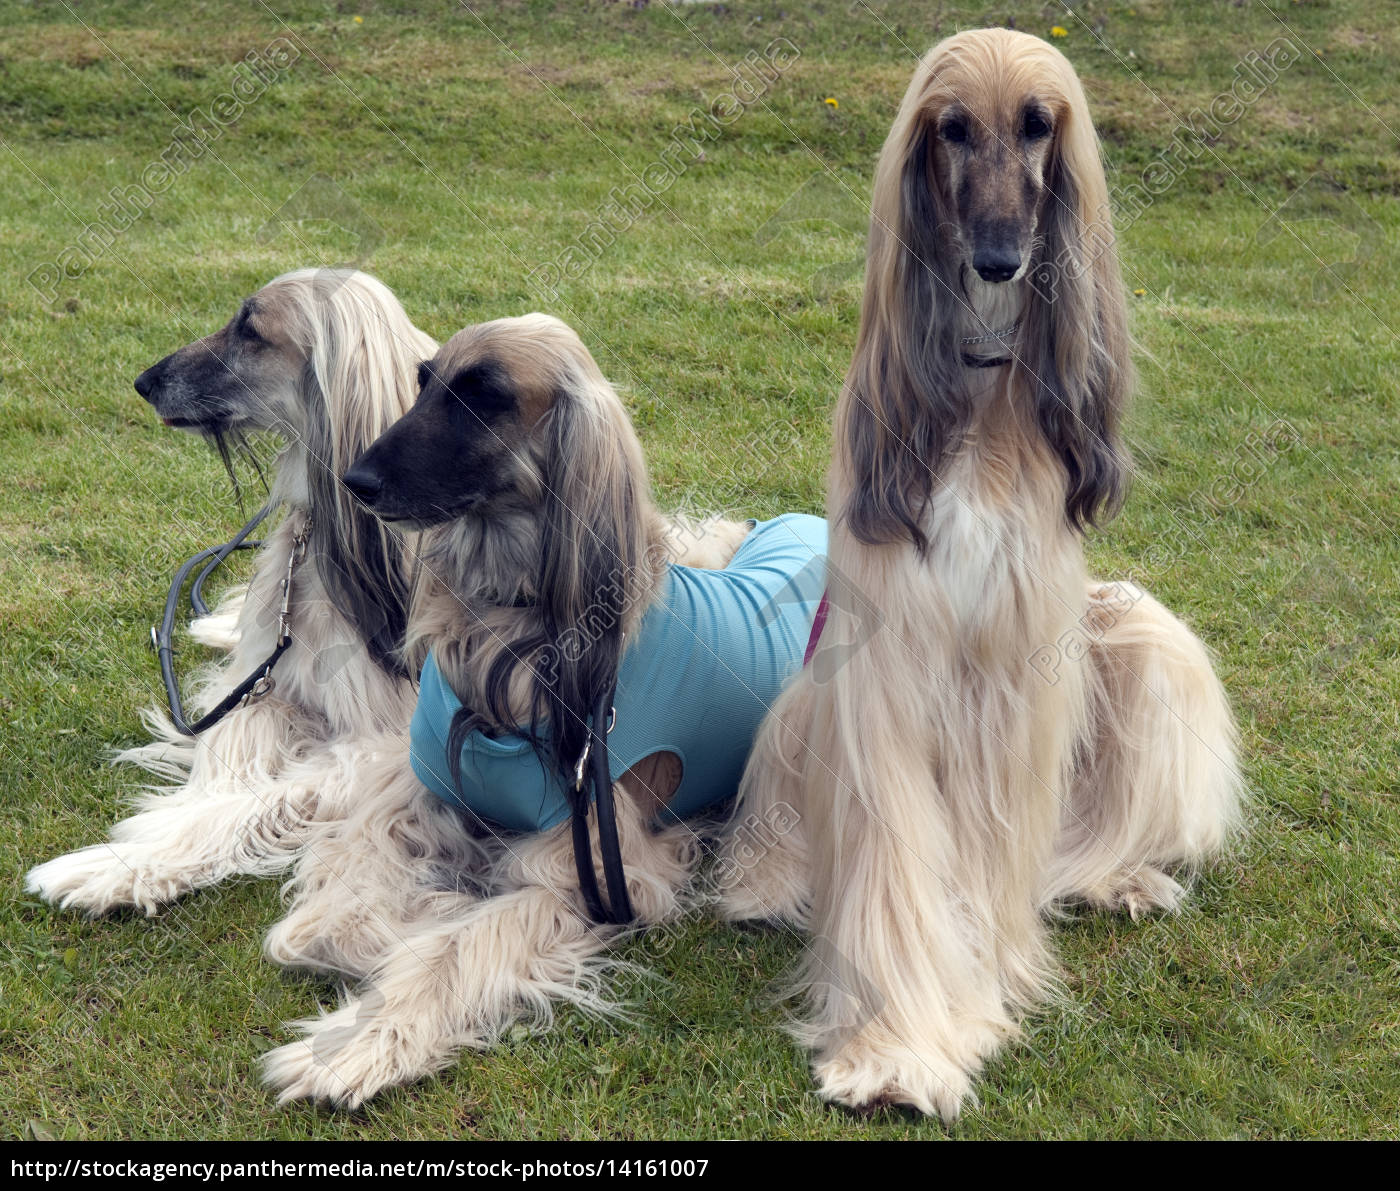 Afghane; Afghanischer; Windhund; Hund; Lizenzfreies Bild 14161007